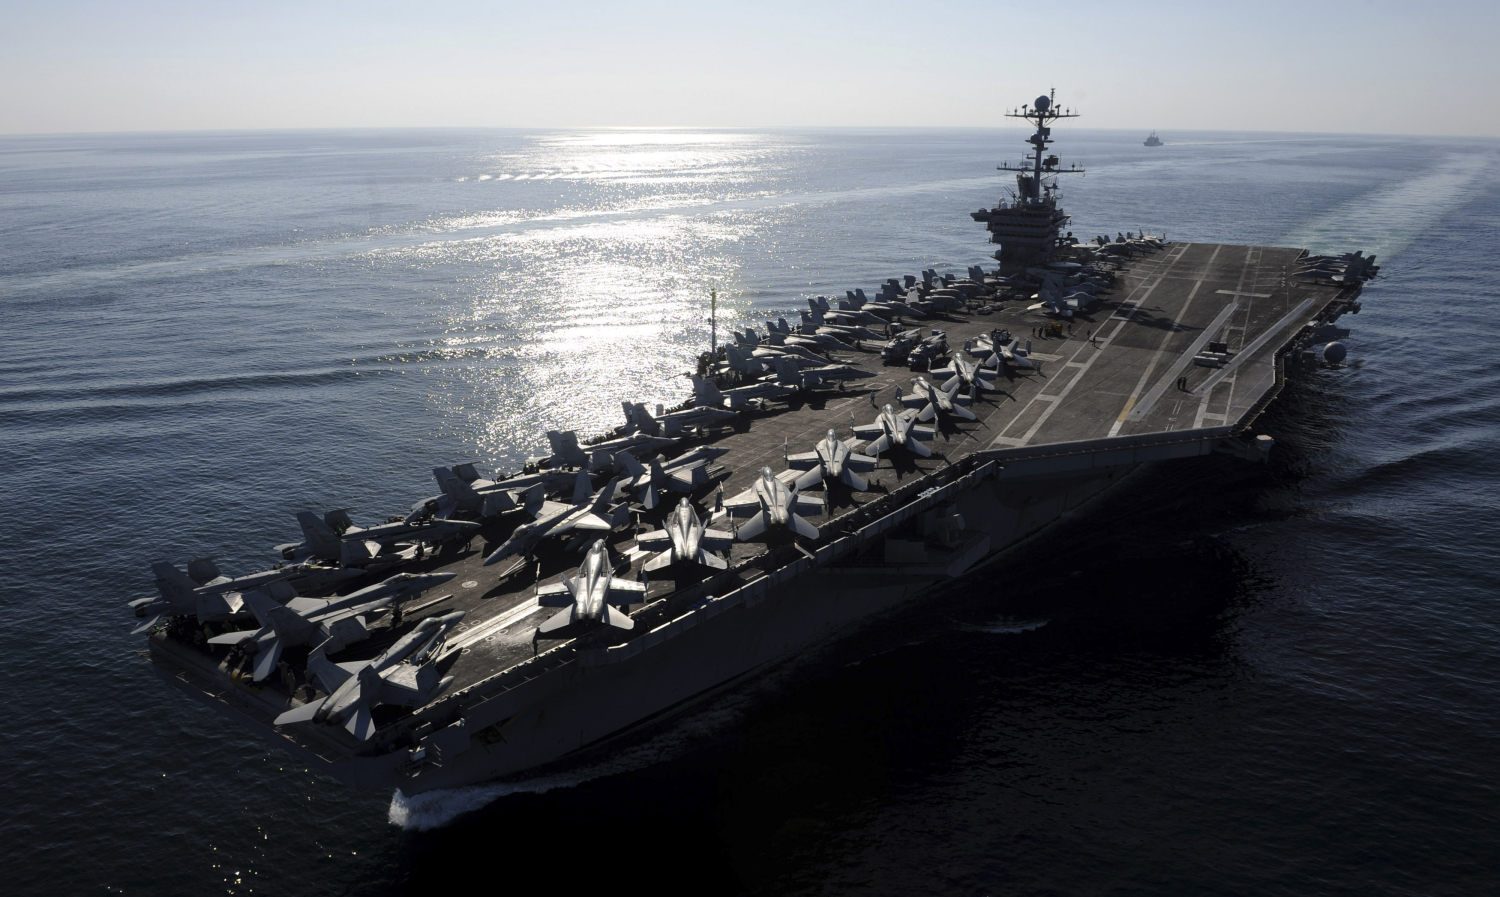 EEUU acusa a Irán de probar misiles cerca de los buques de guerra que combaten al Estado Islámico